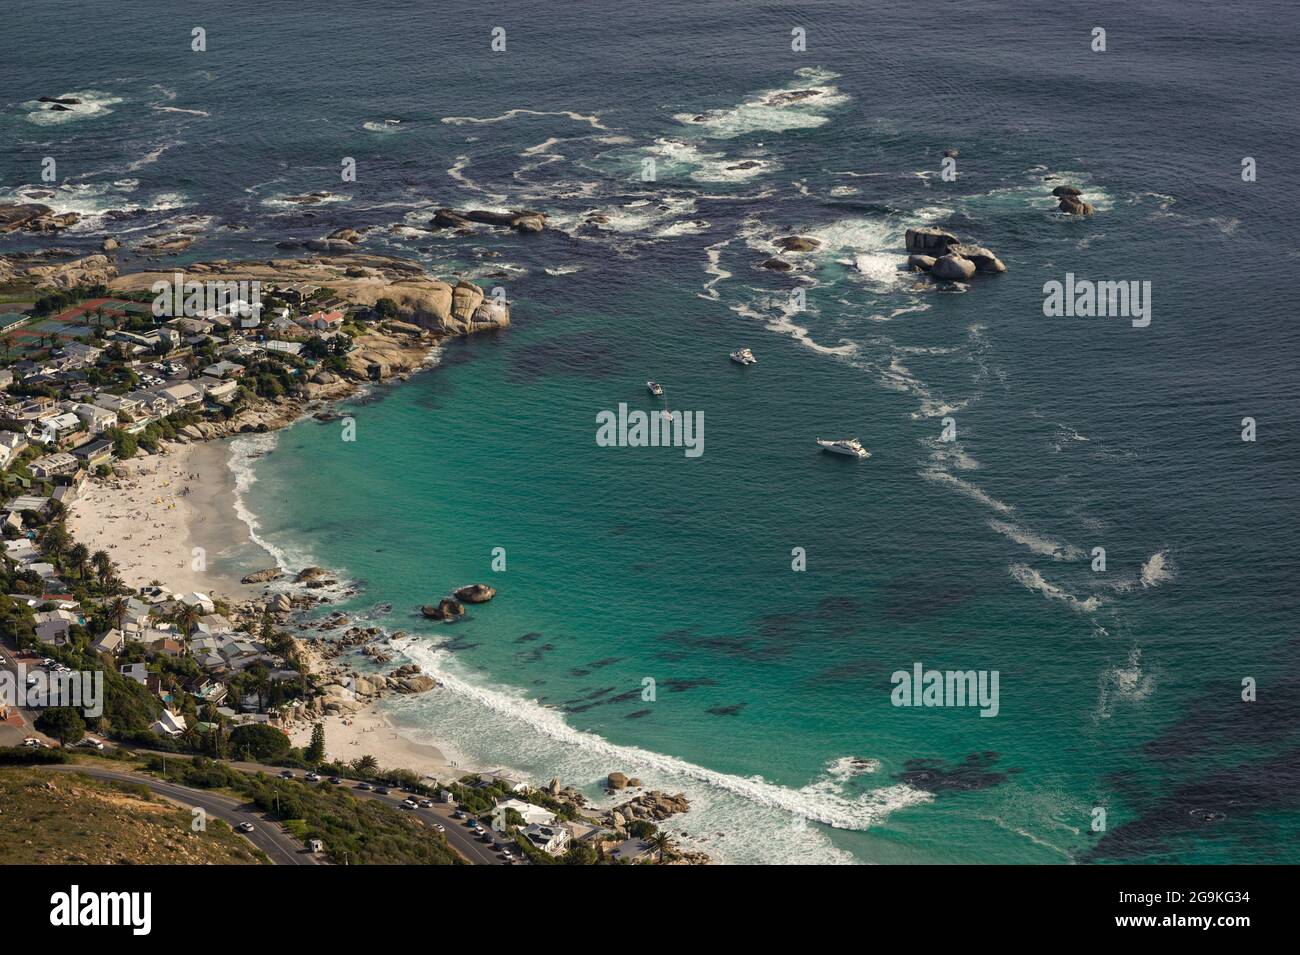 La plage de Clifton au Cap est le terrain de jeu des riches d'Afrique du Sud sur la côte atlantique et illustre les inégalités extrêmes de revenus du pays Banque D'Images